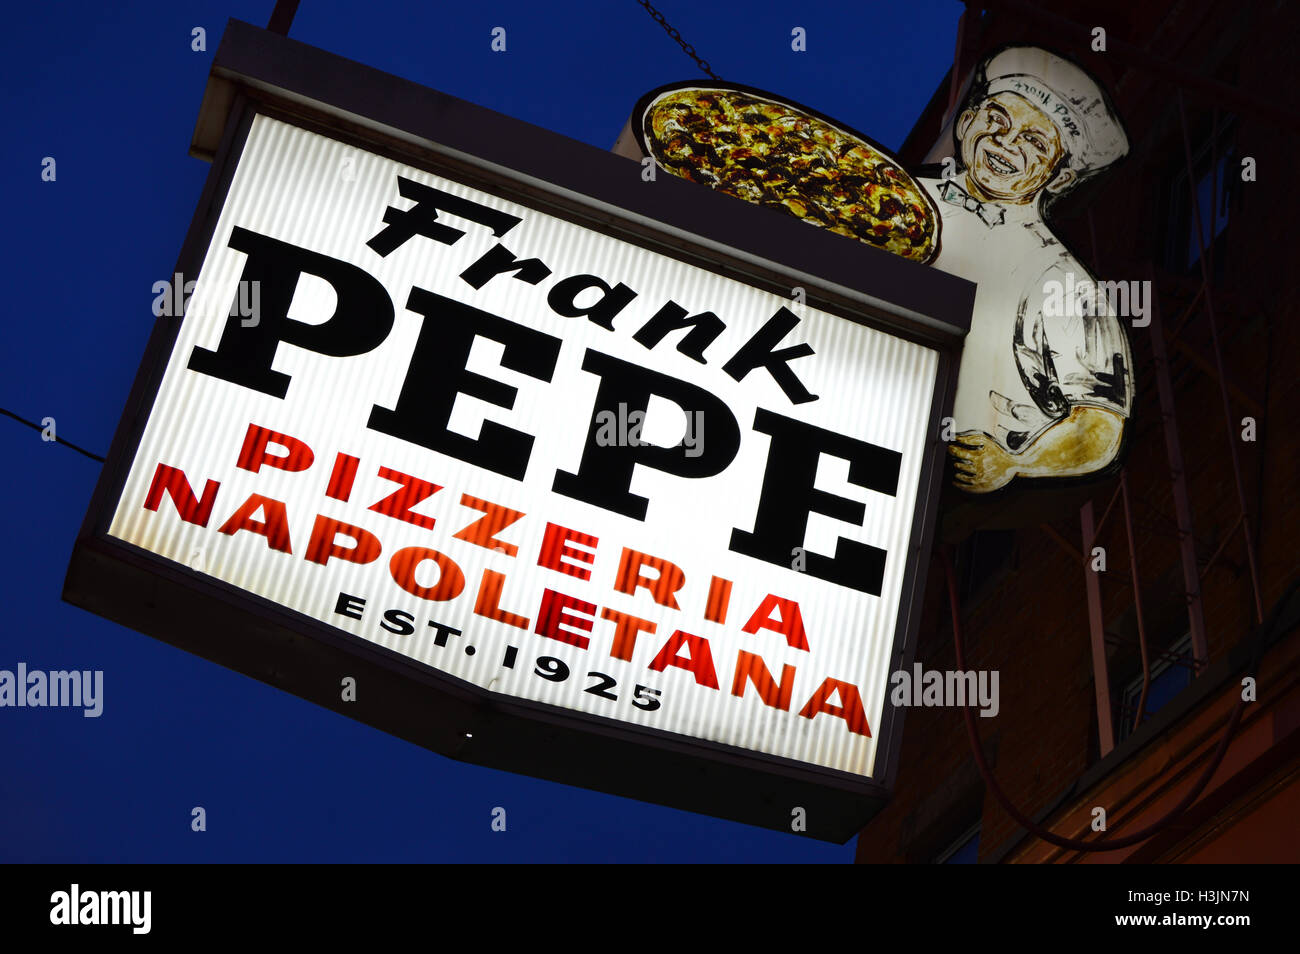 Frank Pepe pizzería en New Haven, Connecticut. El restaurante es a menudo acreditado como el inventor de la pizza Thin Crust moderno. Foto de stock